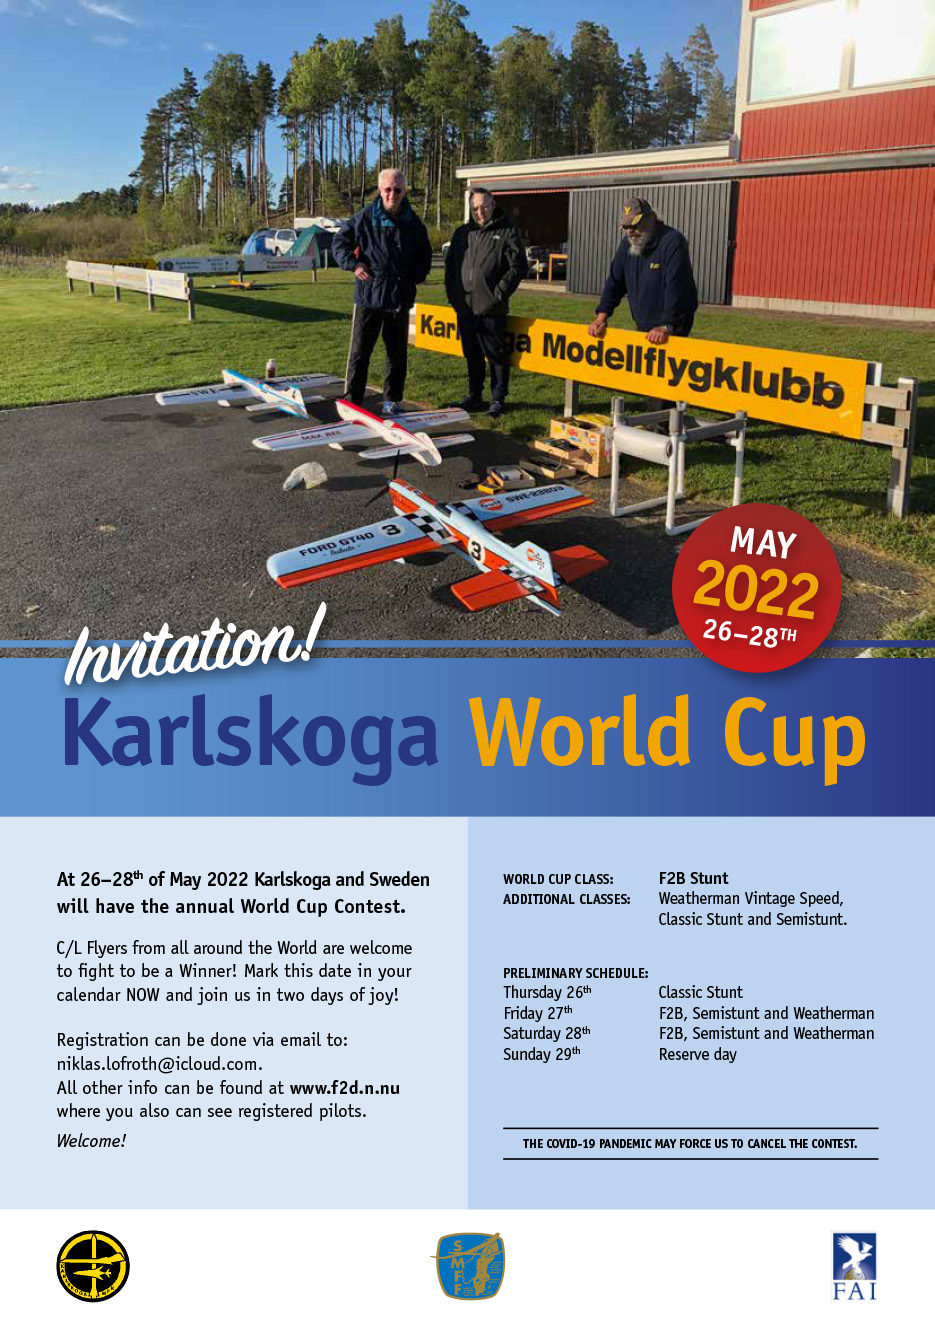 KarlskogaWC2022_invitation.jpg